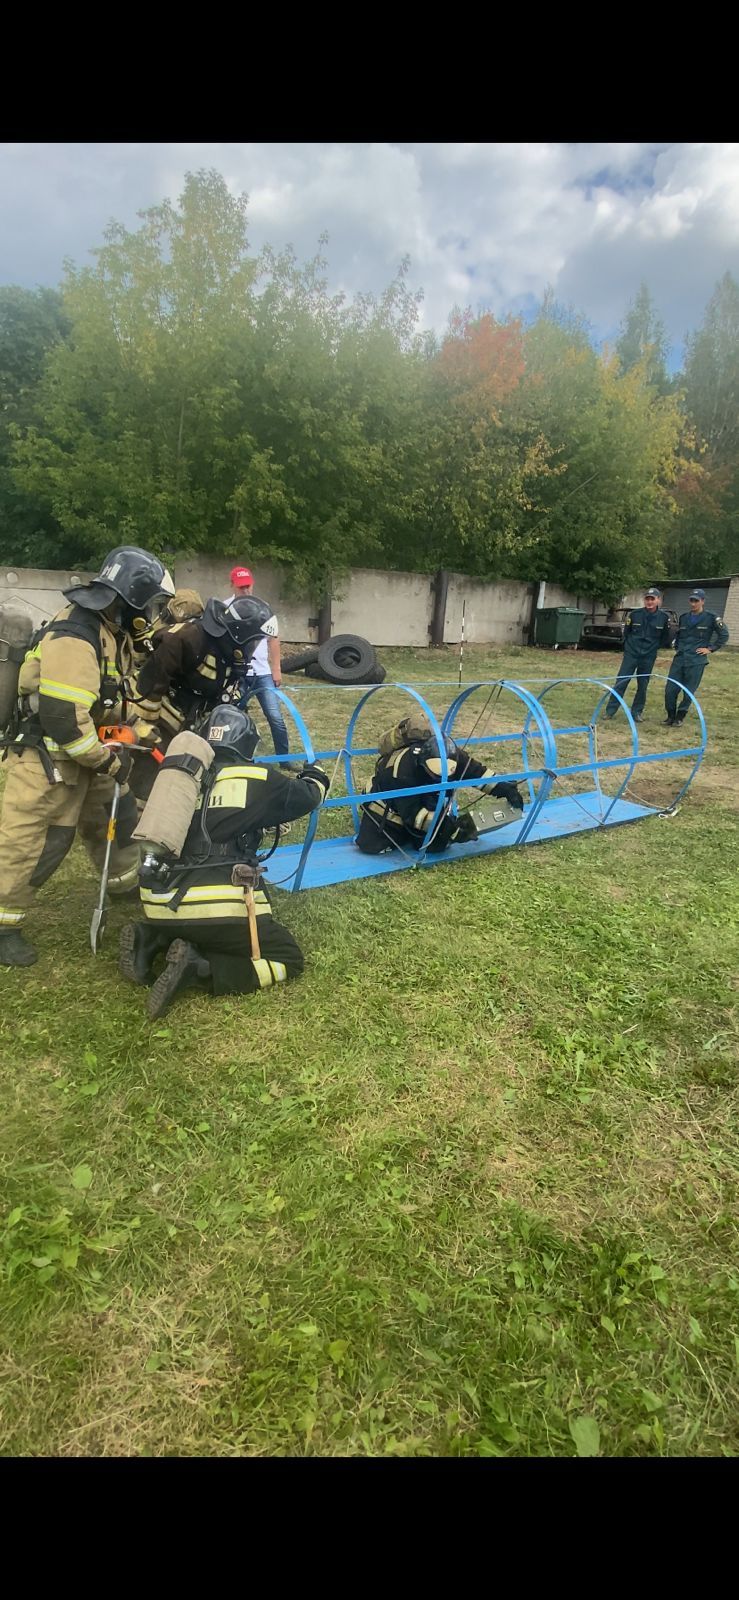 Команда пожарных из Агрыза заняла 2 место в республике (ФОТО)